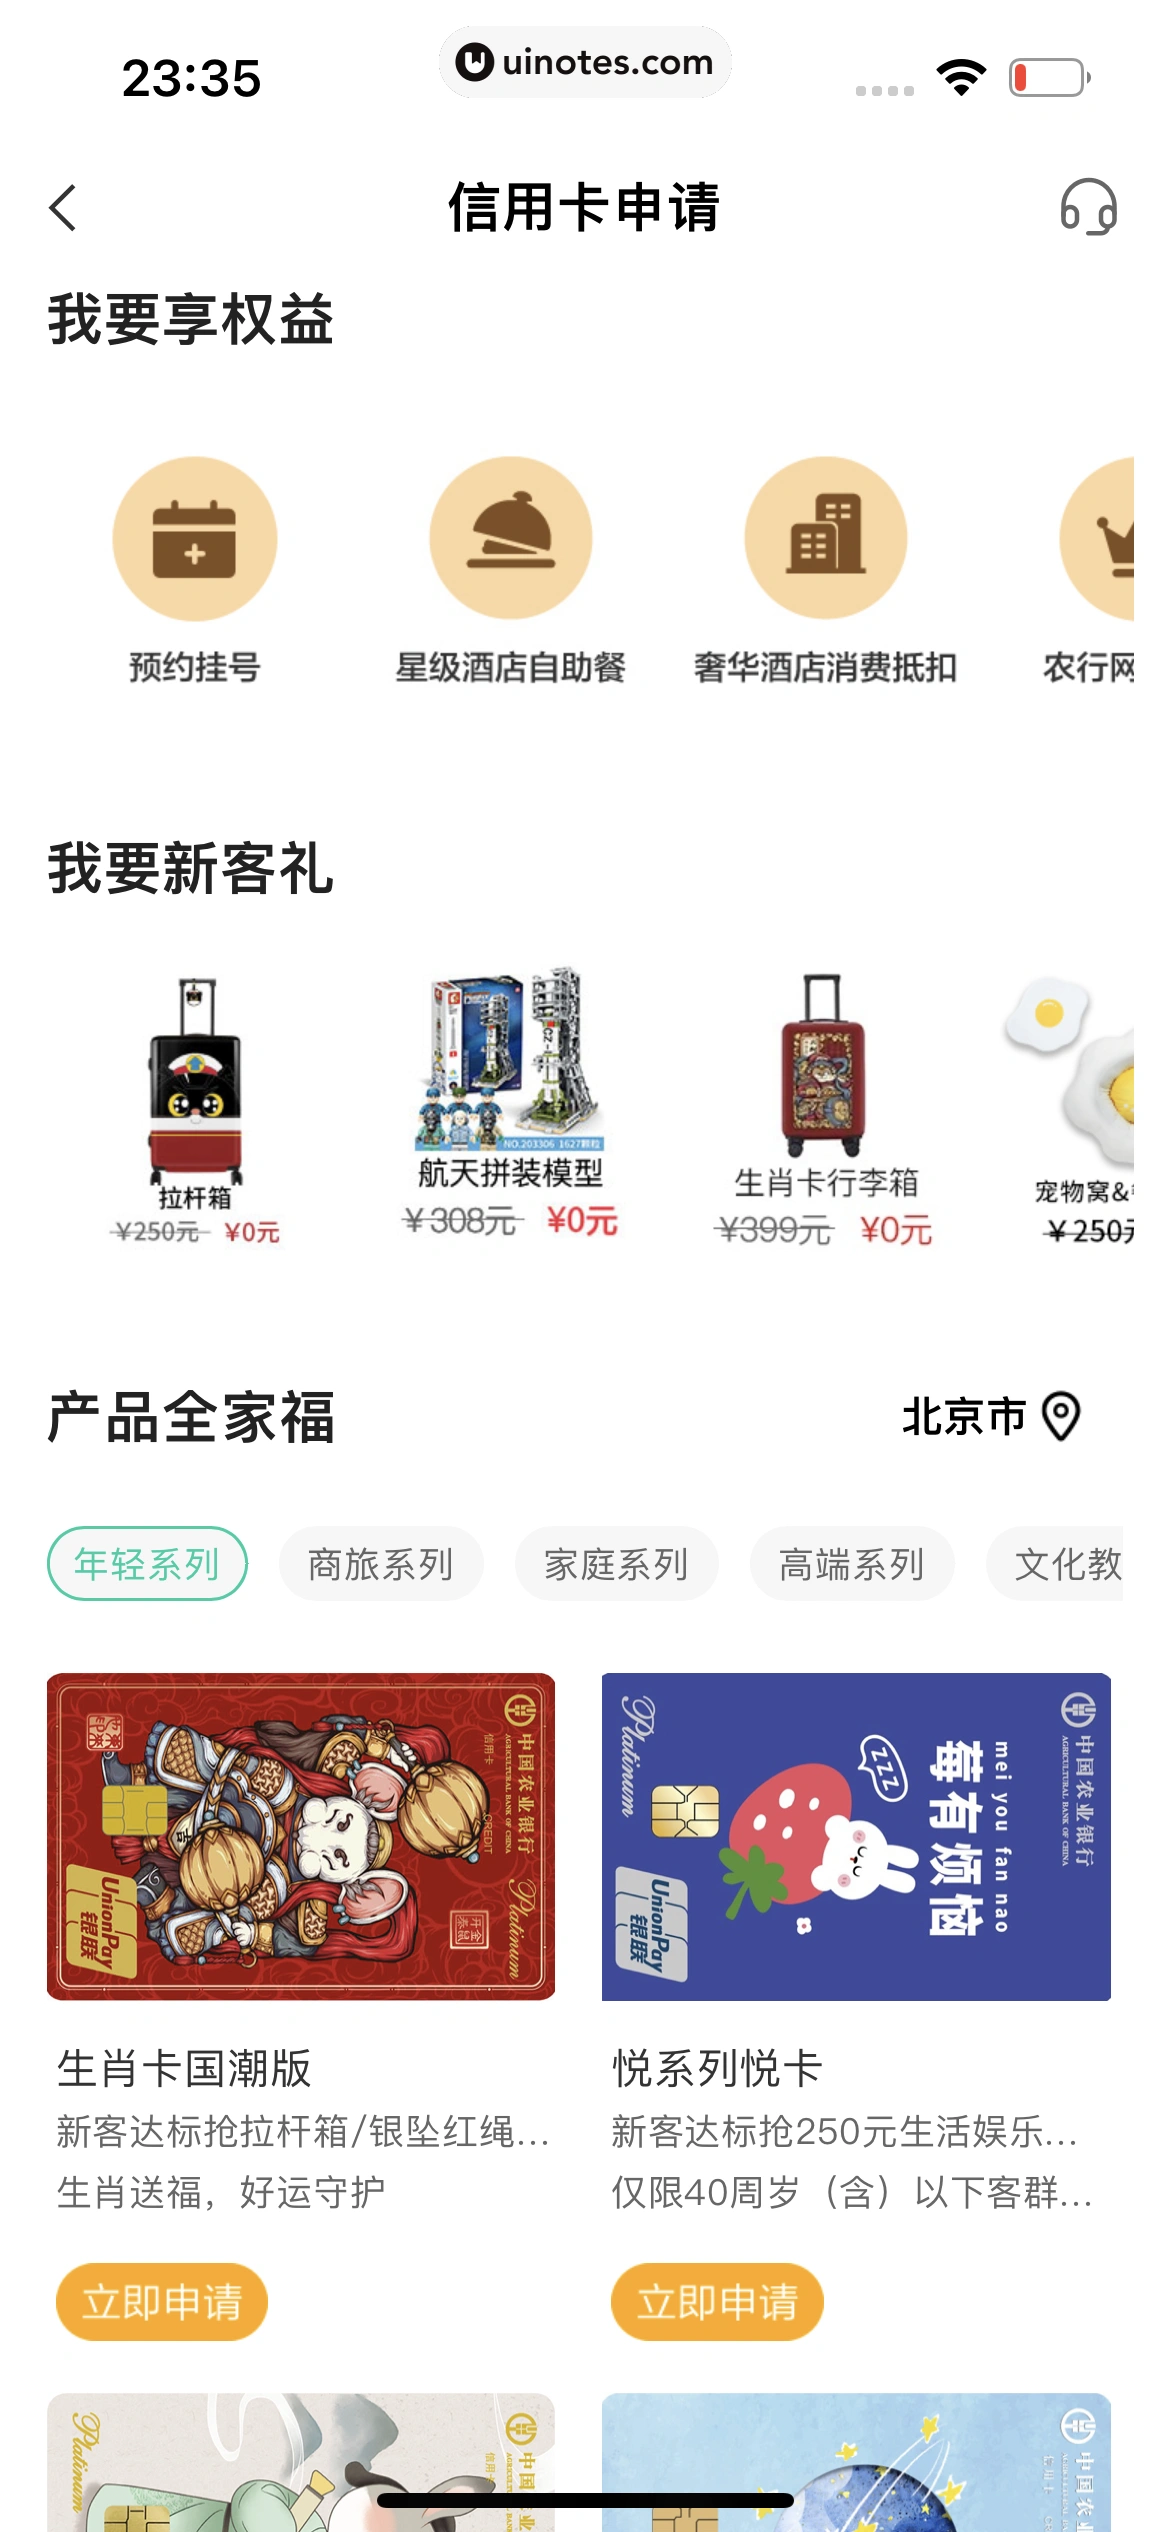 中国农业银行 App 截图 090 - UI Notes